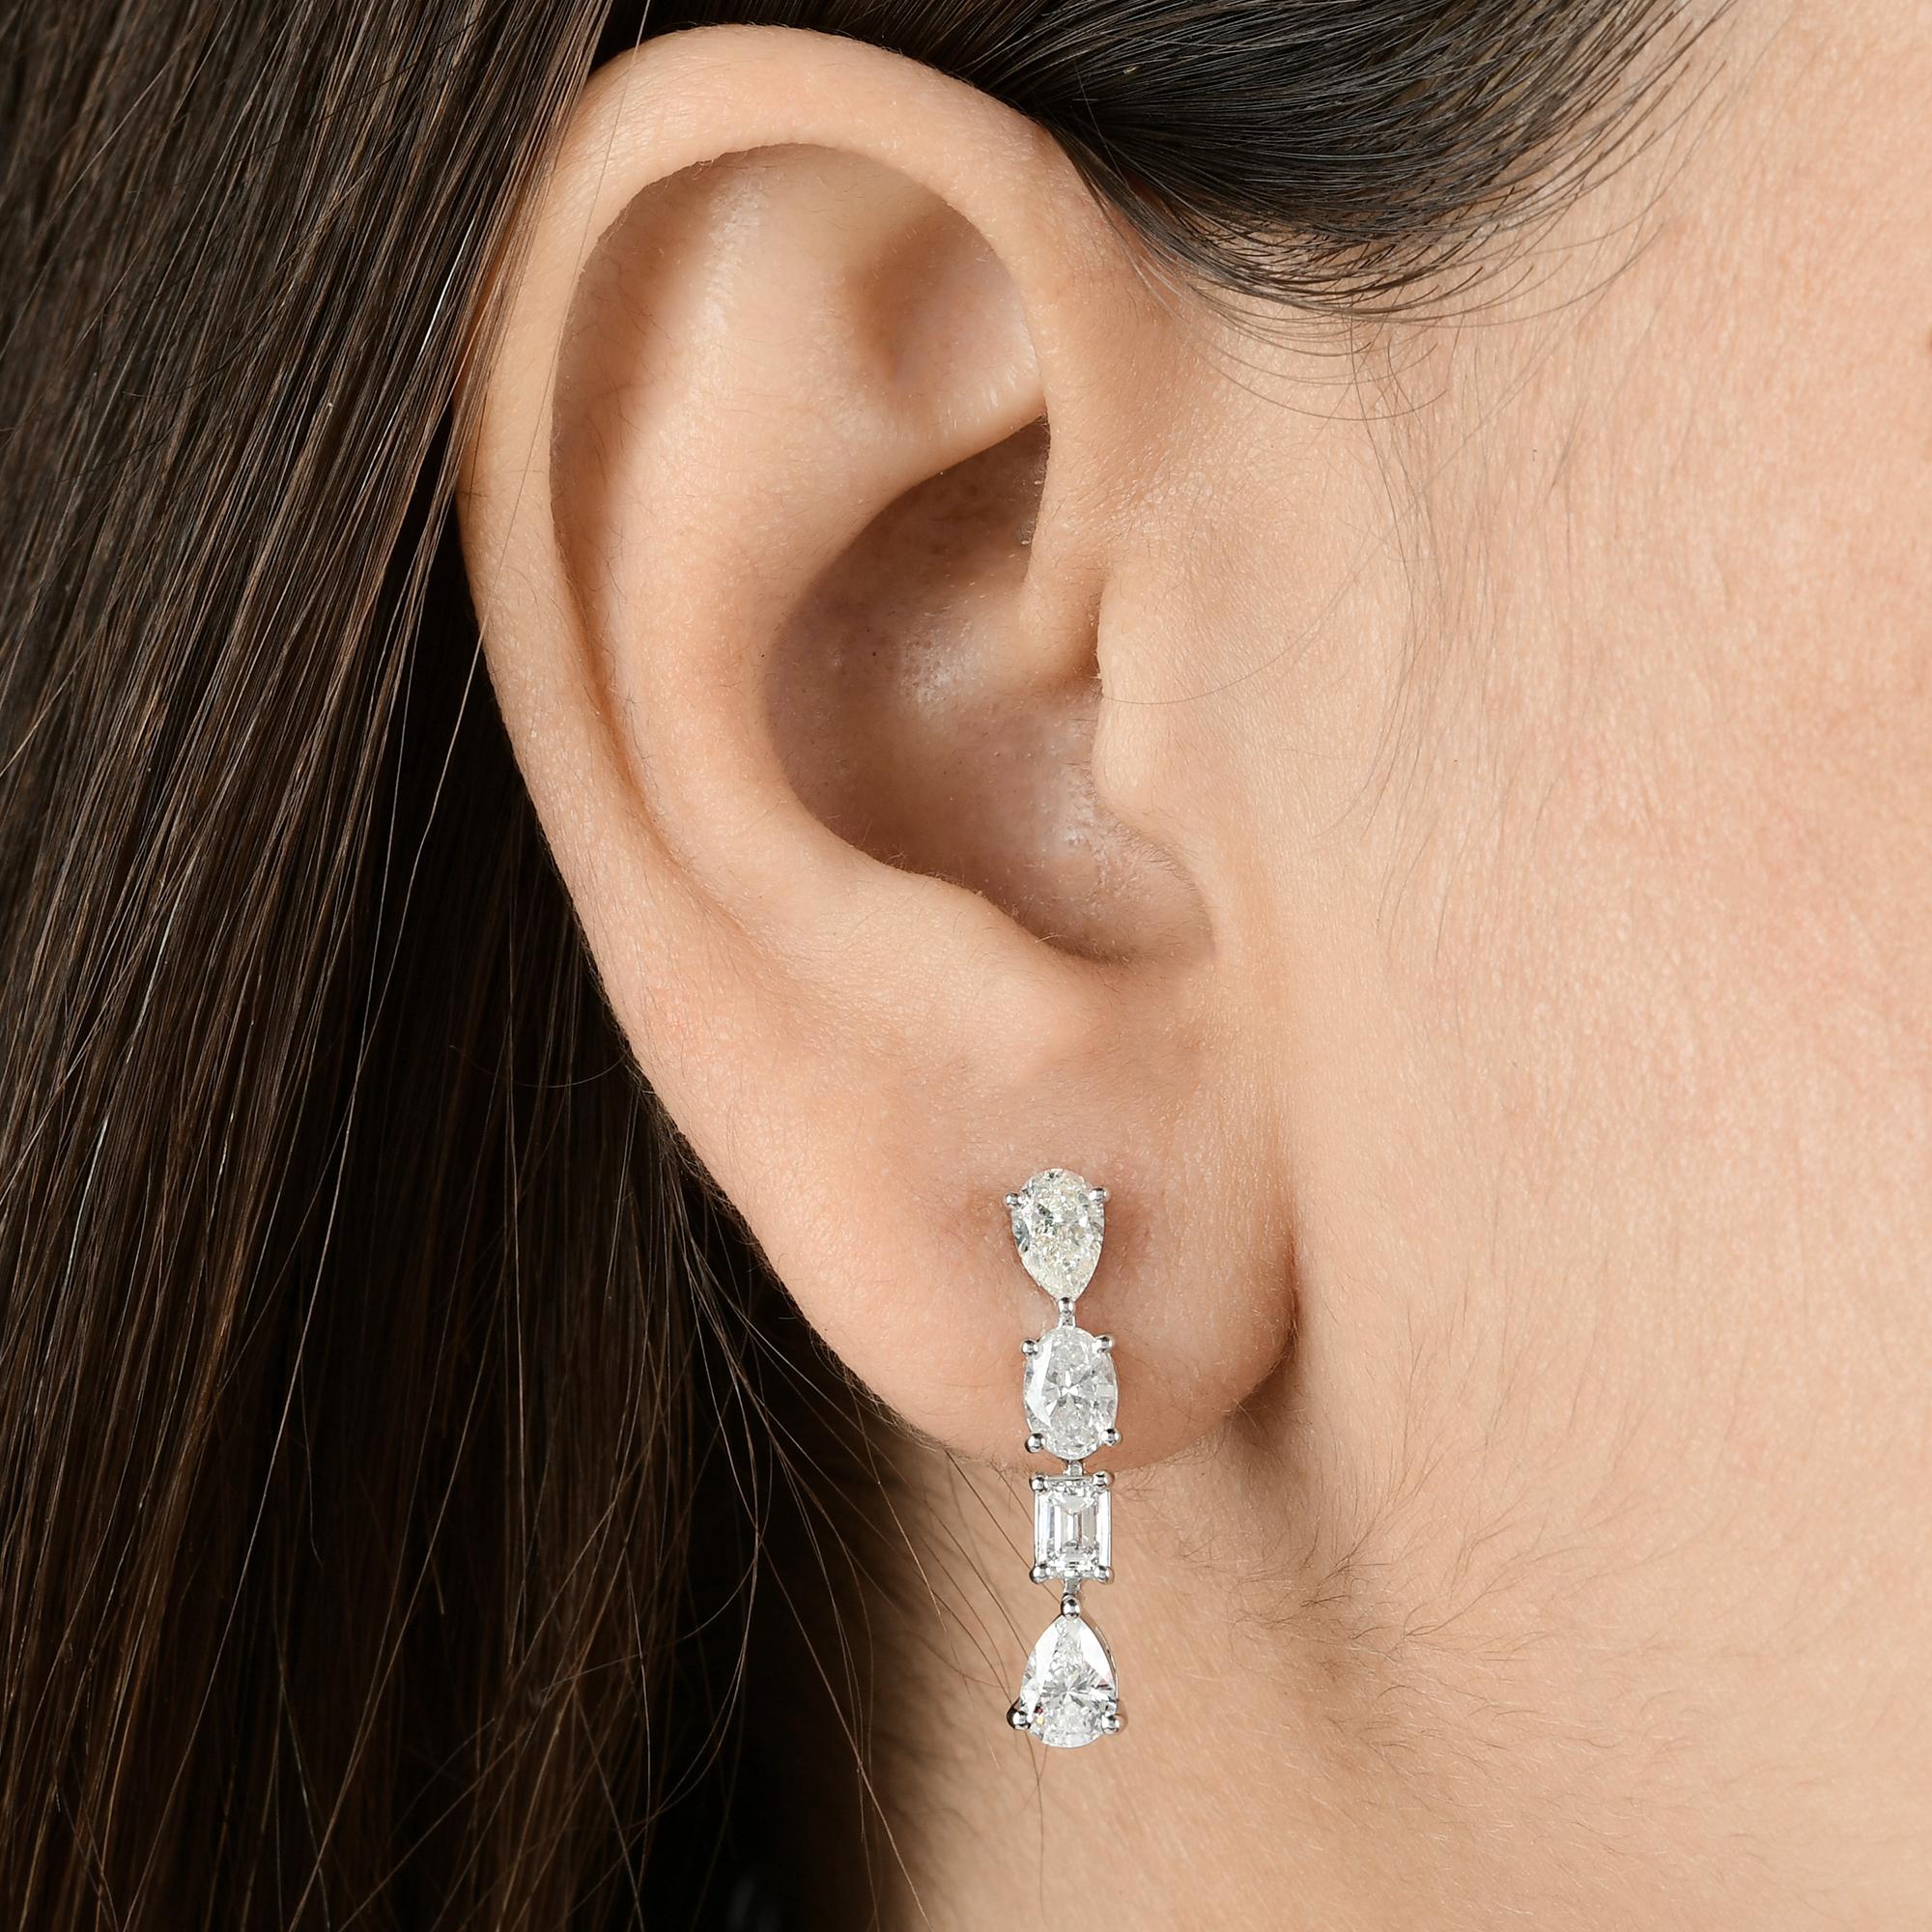 Women's 2.3 Carat Pear & Emerald Cut Diamond Dangle Earrings 18 Karat White Gold Jewelry For Sale